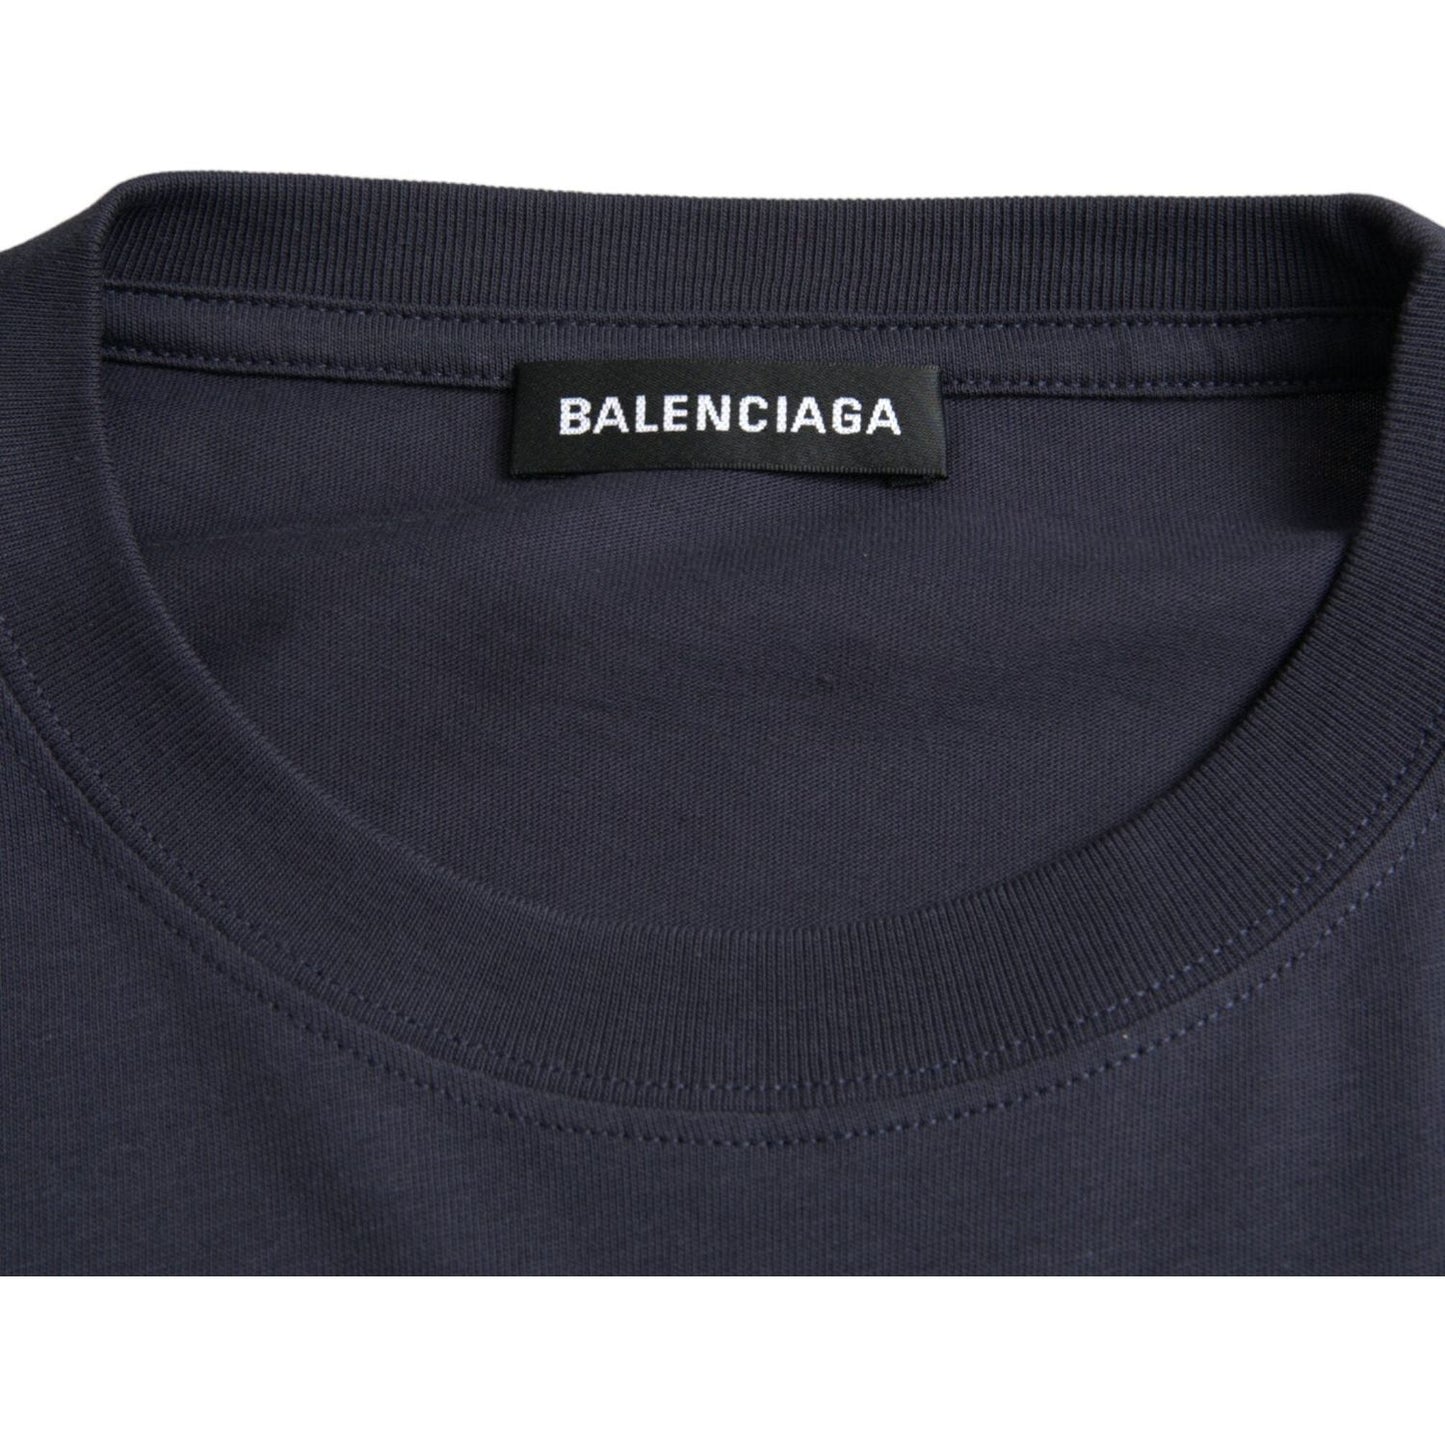 Balenciaga Dark Blue Cotton Logo Crew Neck Short Sleeves T-shirt dark-blue-cotton-logo-crew-neck-short-sleeves-t-shirt